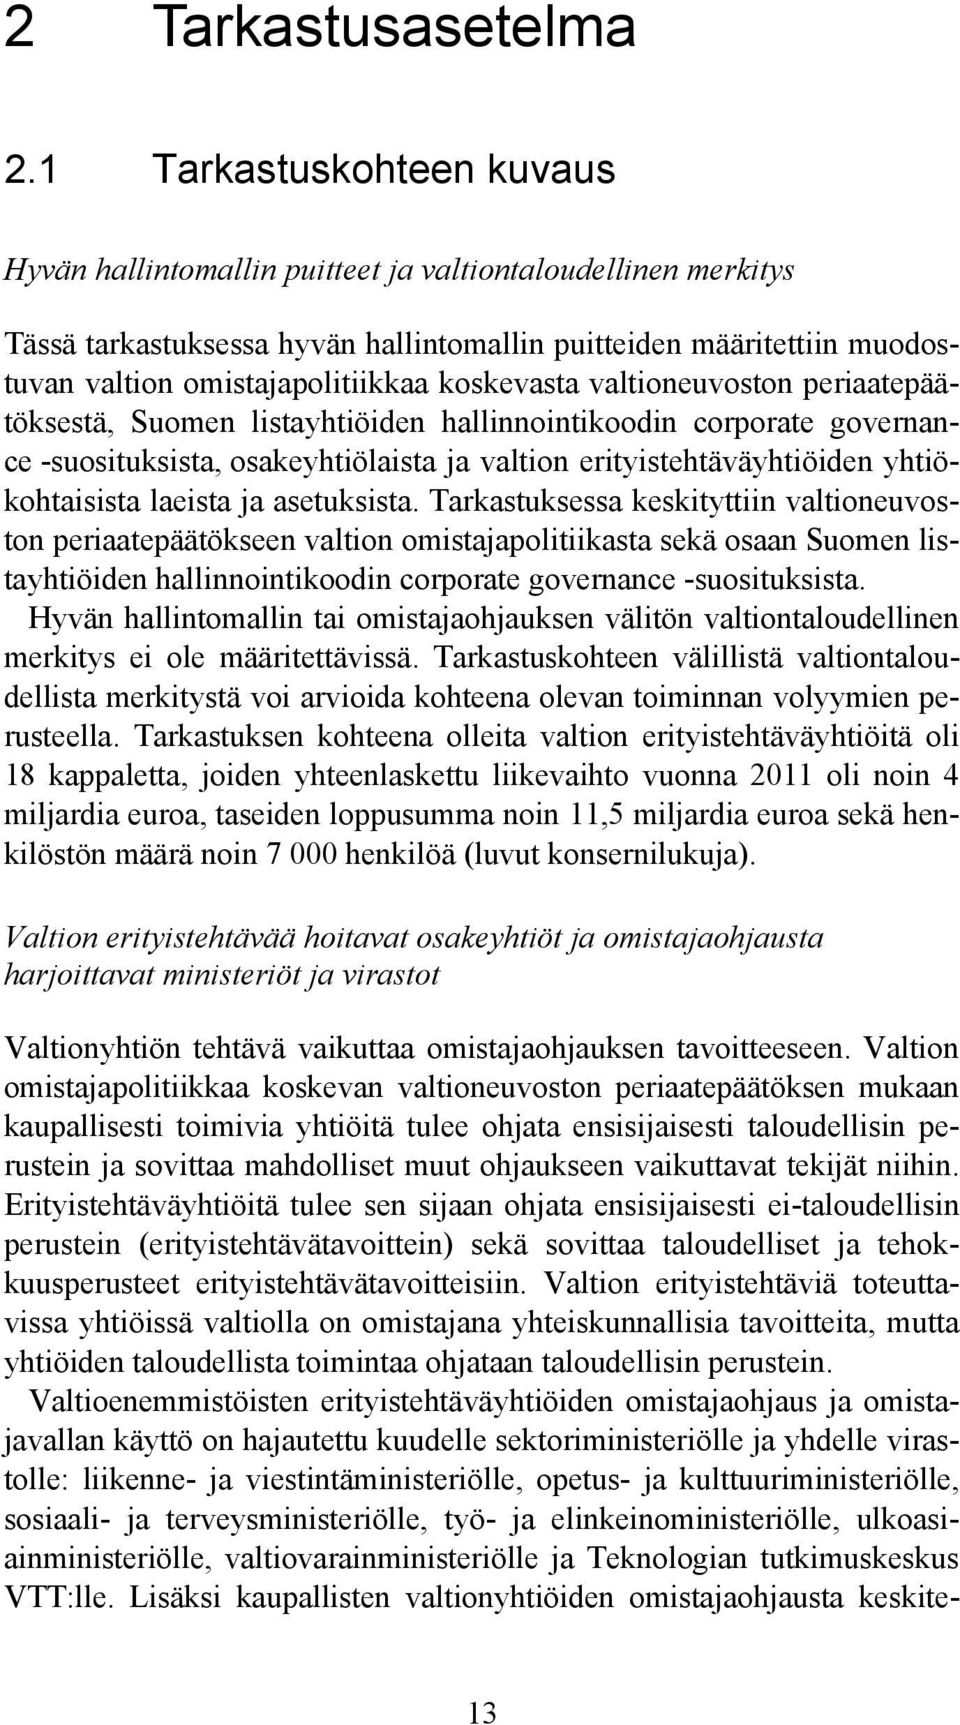 koskevasta valtioneuvoston periaatepäätöksestä, Suomen listayhtiöiden hallinnointikoodin corporate governance -suosituksista, osakeyhtiölaista ja valtion erityistehtäväyhtiöiden yhtiökohtaisista